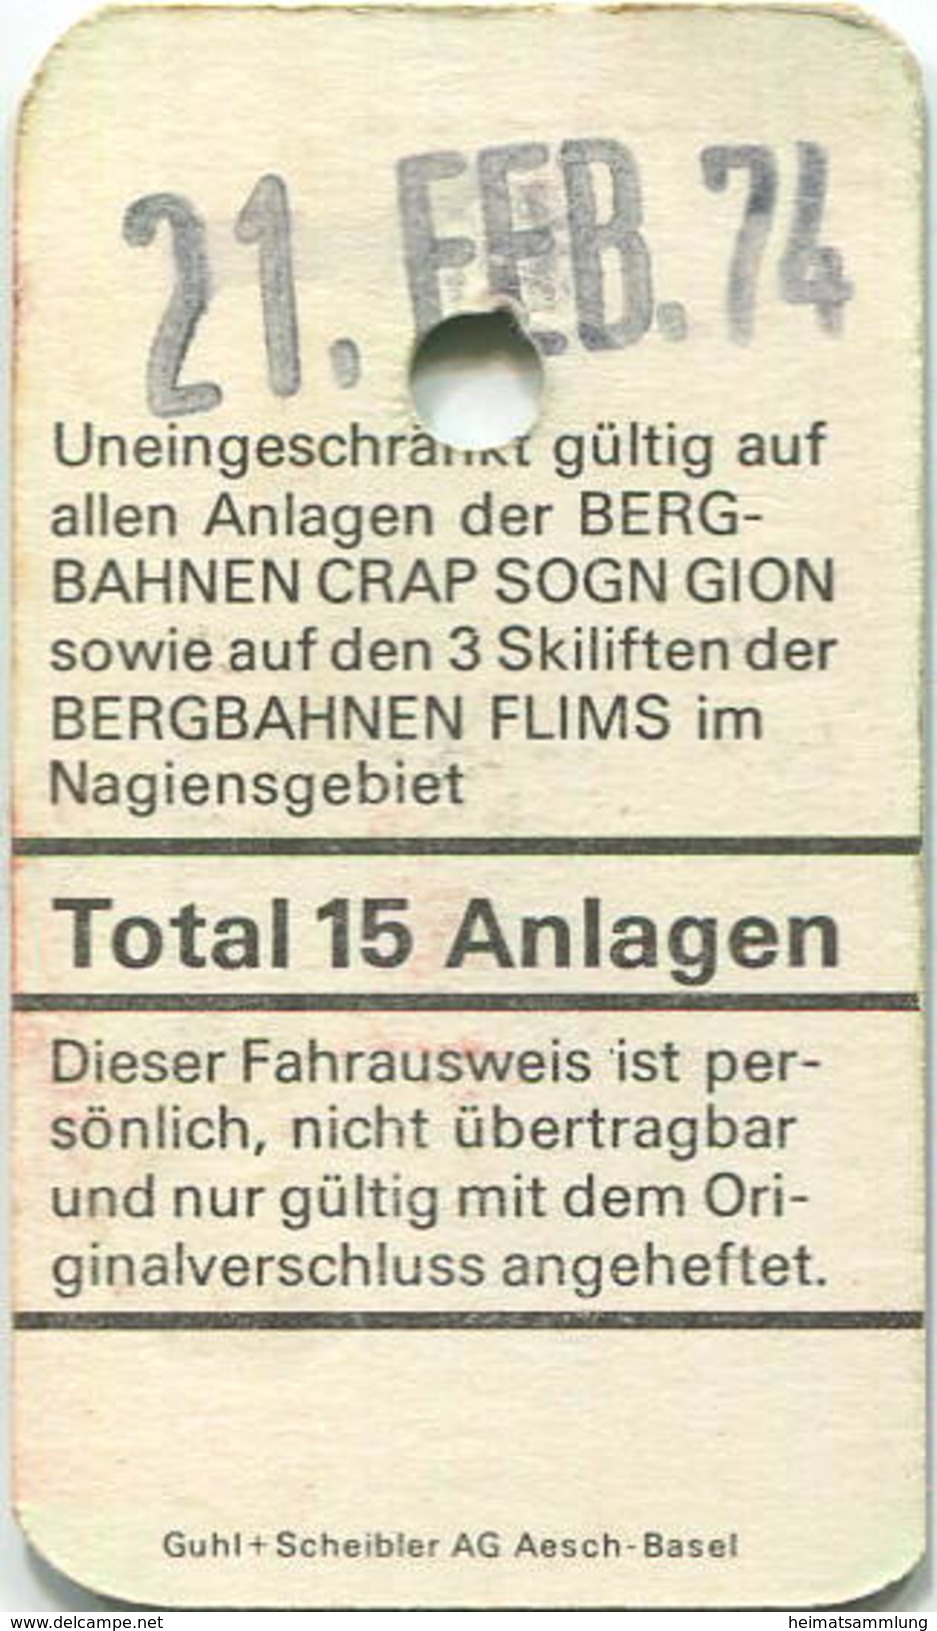 Schweiz - Crap Sogn Gion - Bergbahnen Und Skilifte Im Nagiensgebiet 1974 - Europa